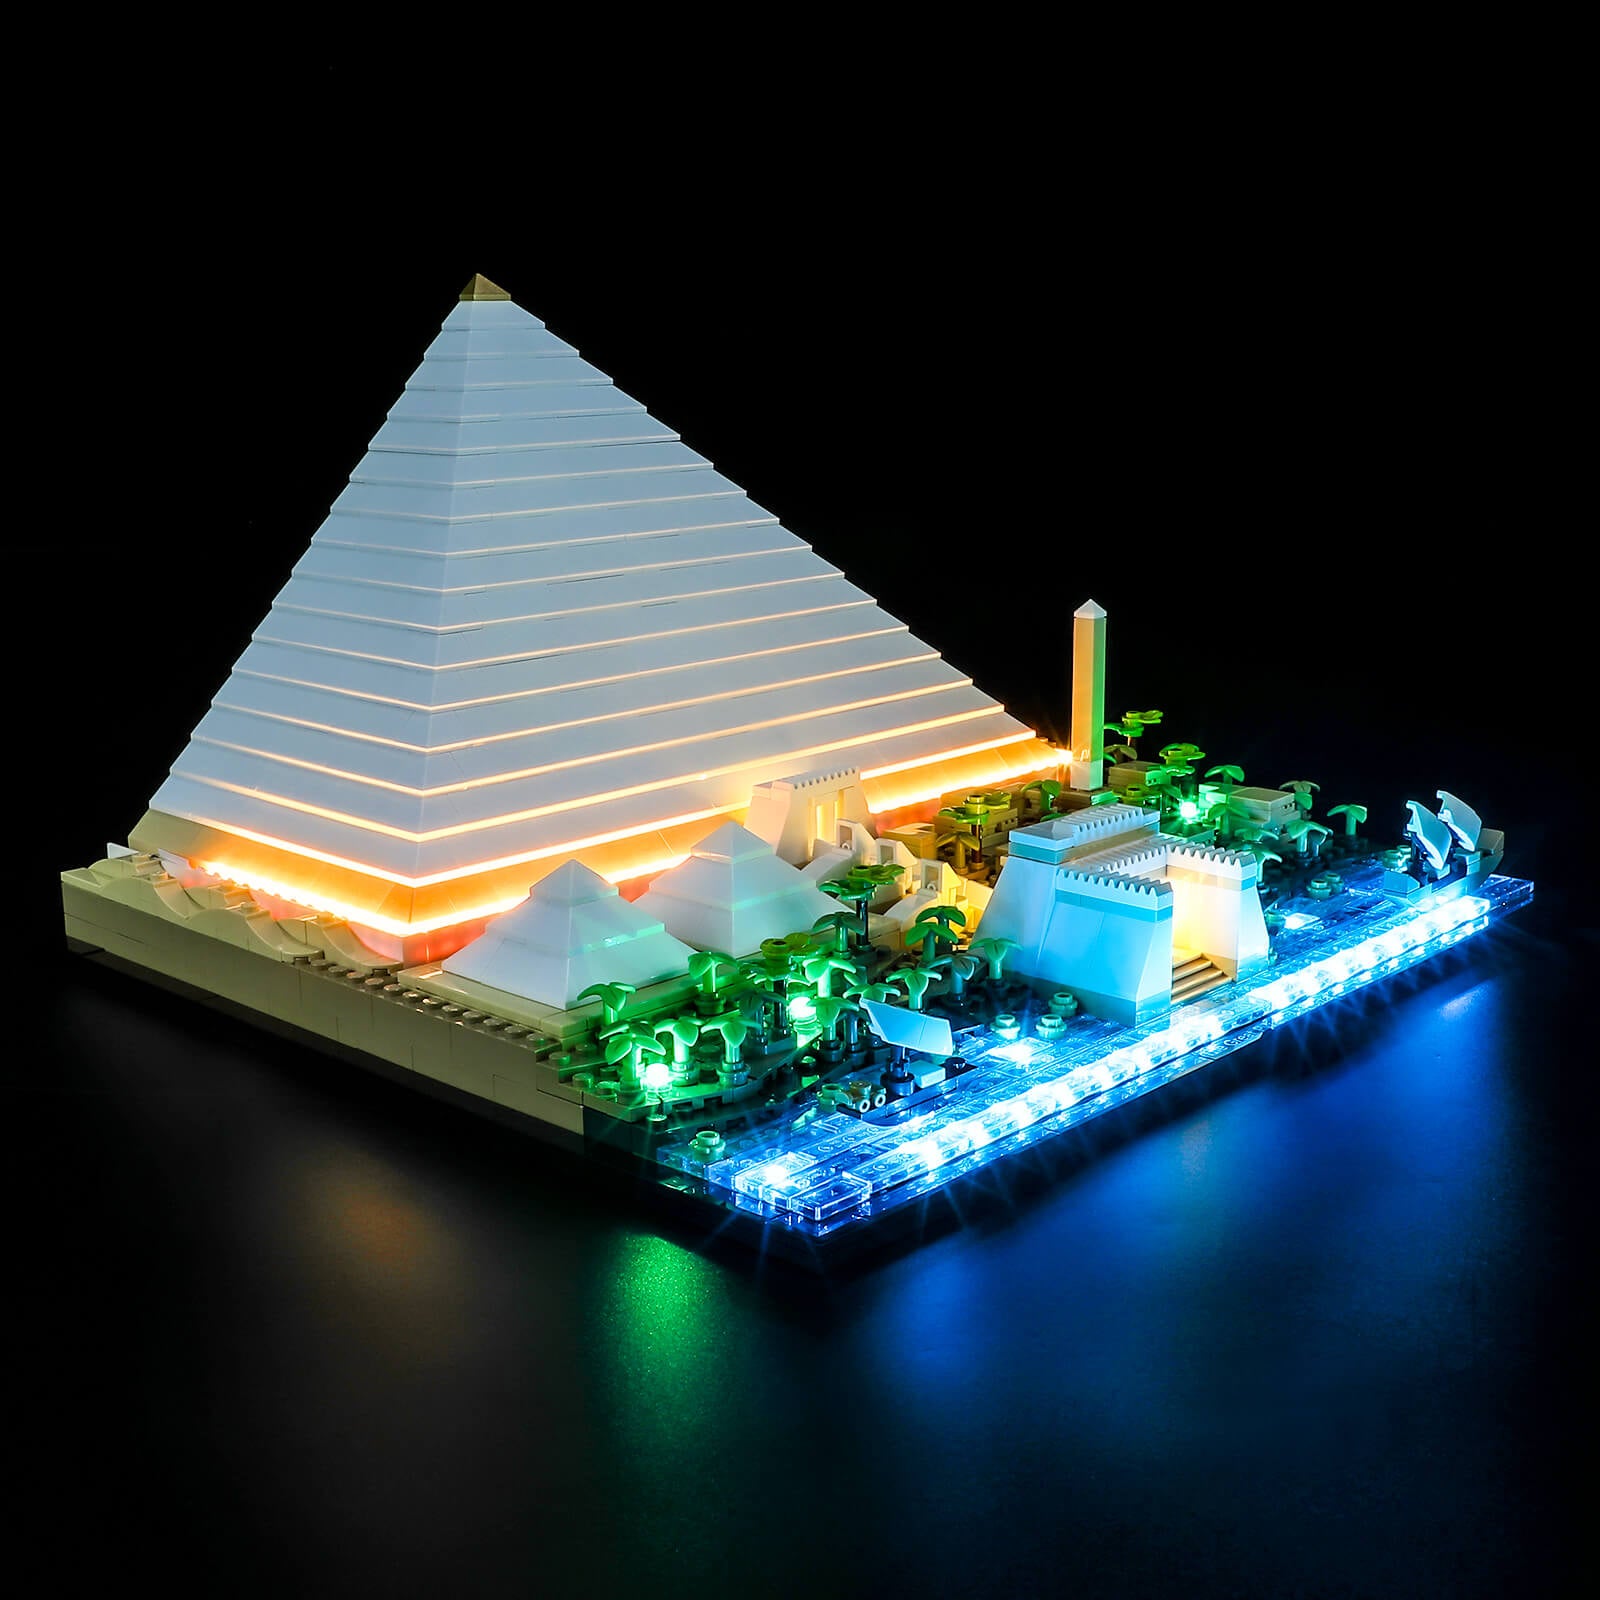 21058 - LEGO® Architecture - La grande pyramide de Gizeh LEGO